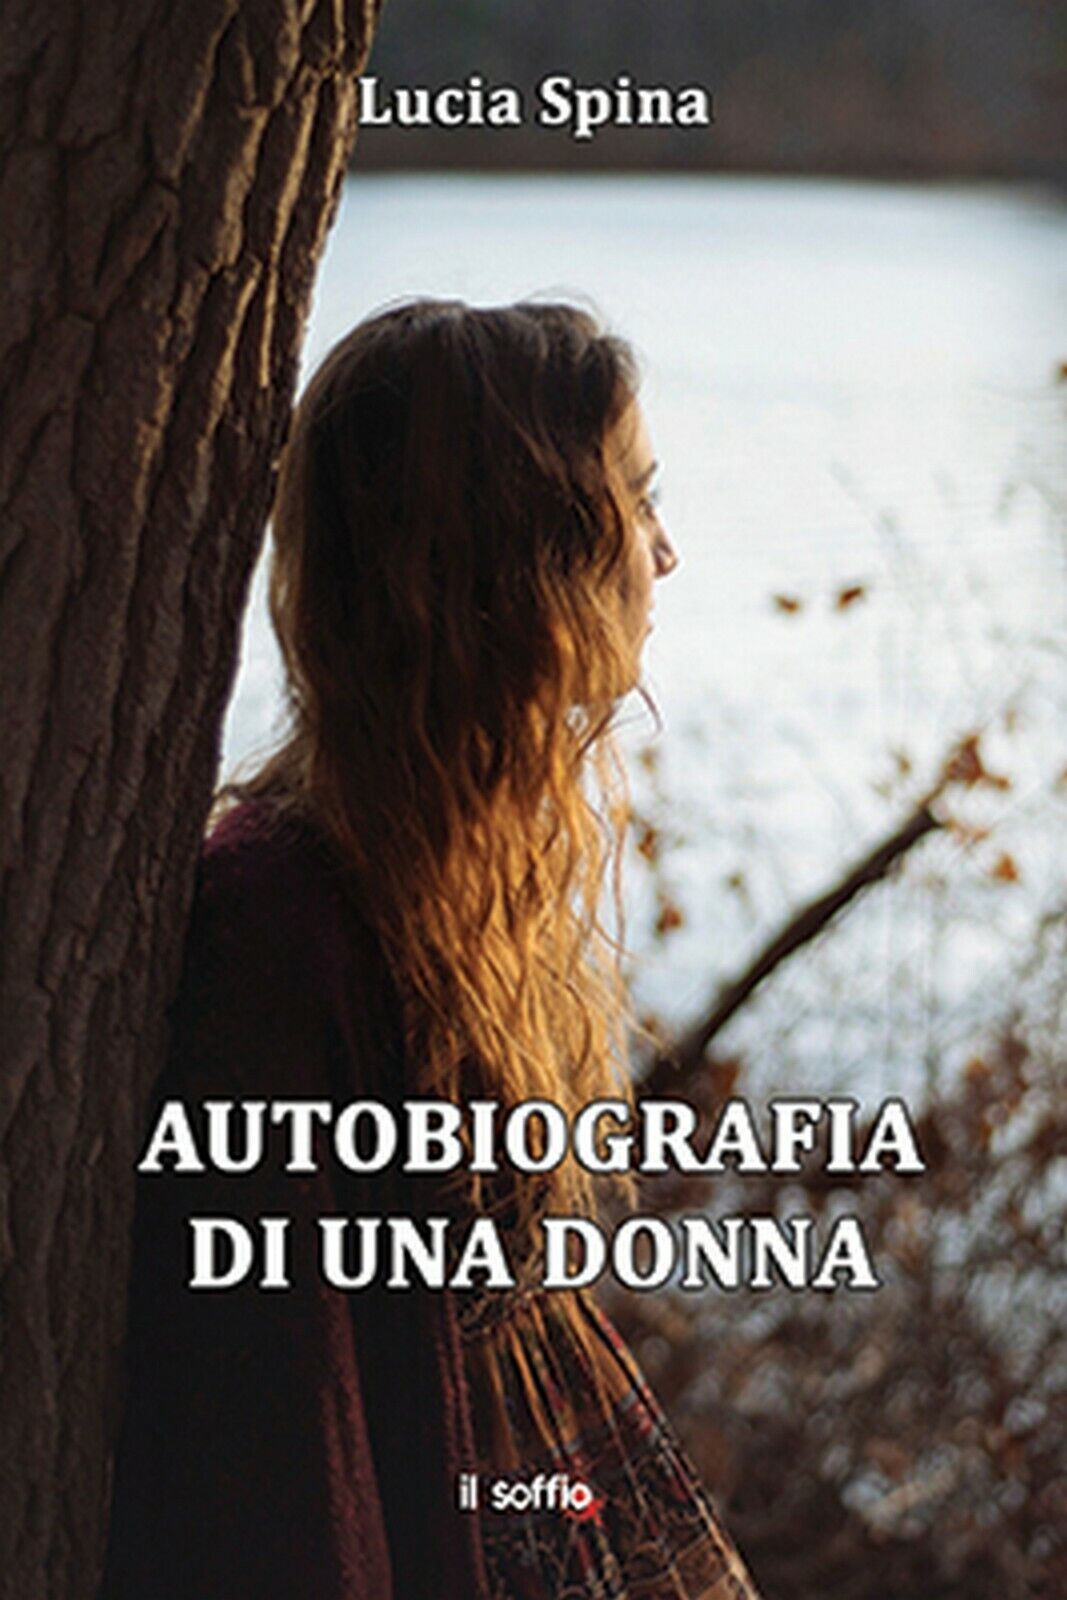 Autobiografia di una donna  di Lucia Spina,  Il Soffio Edizioni